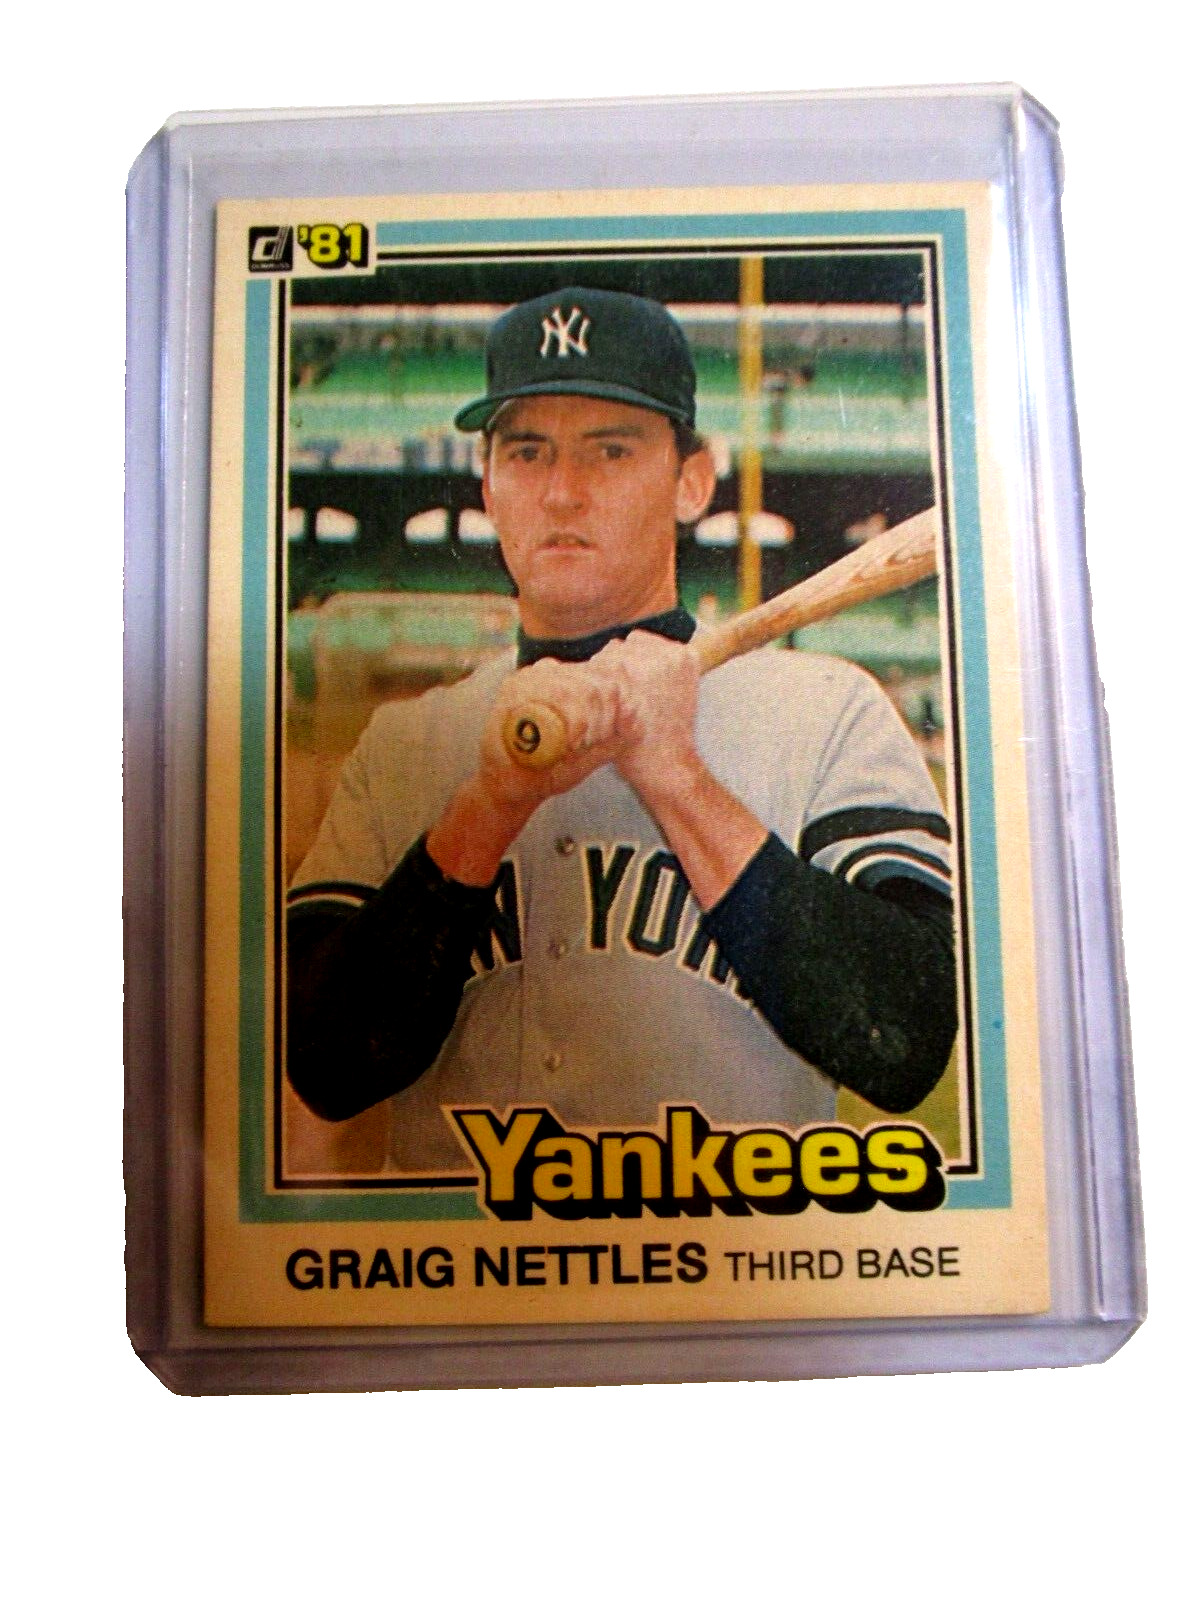 1981 Donruss Graig Nettles #105 New York Yankees-